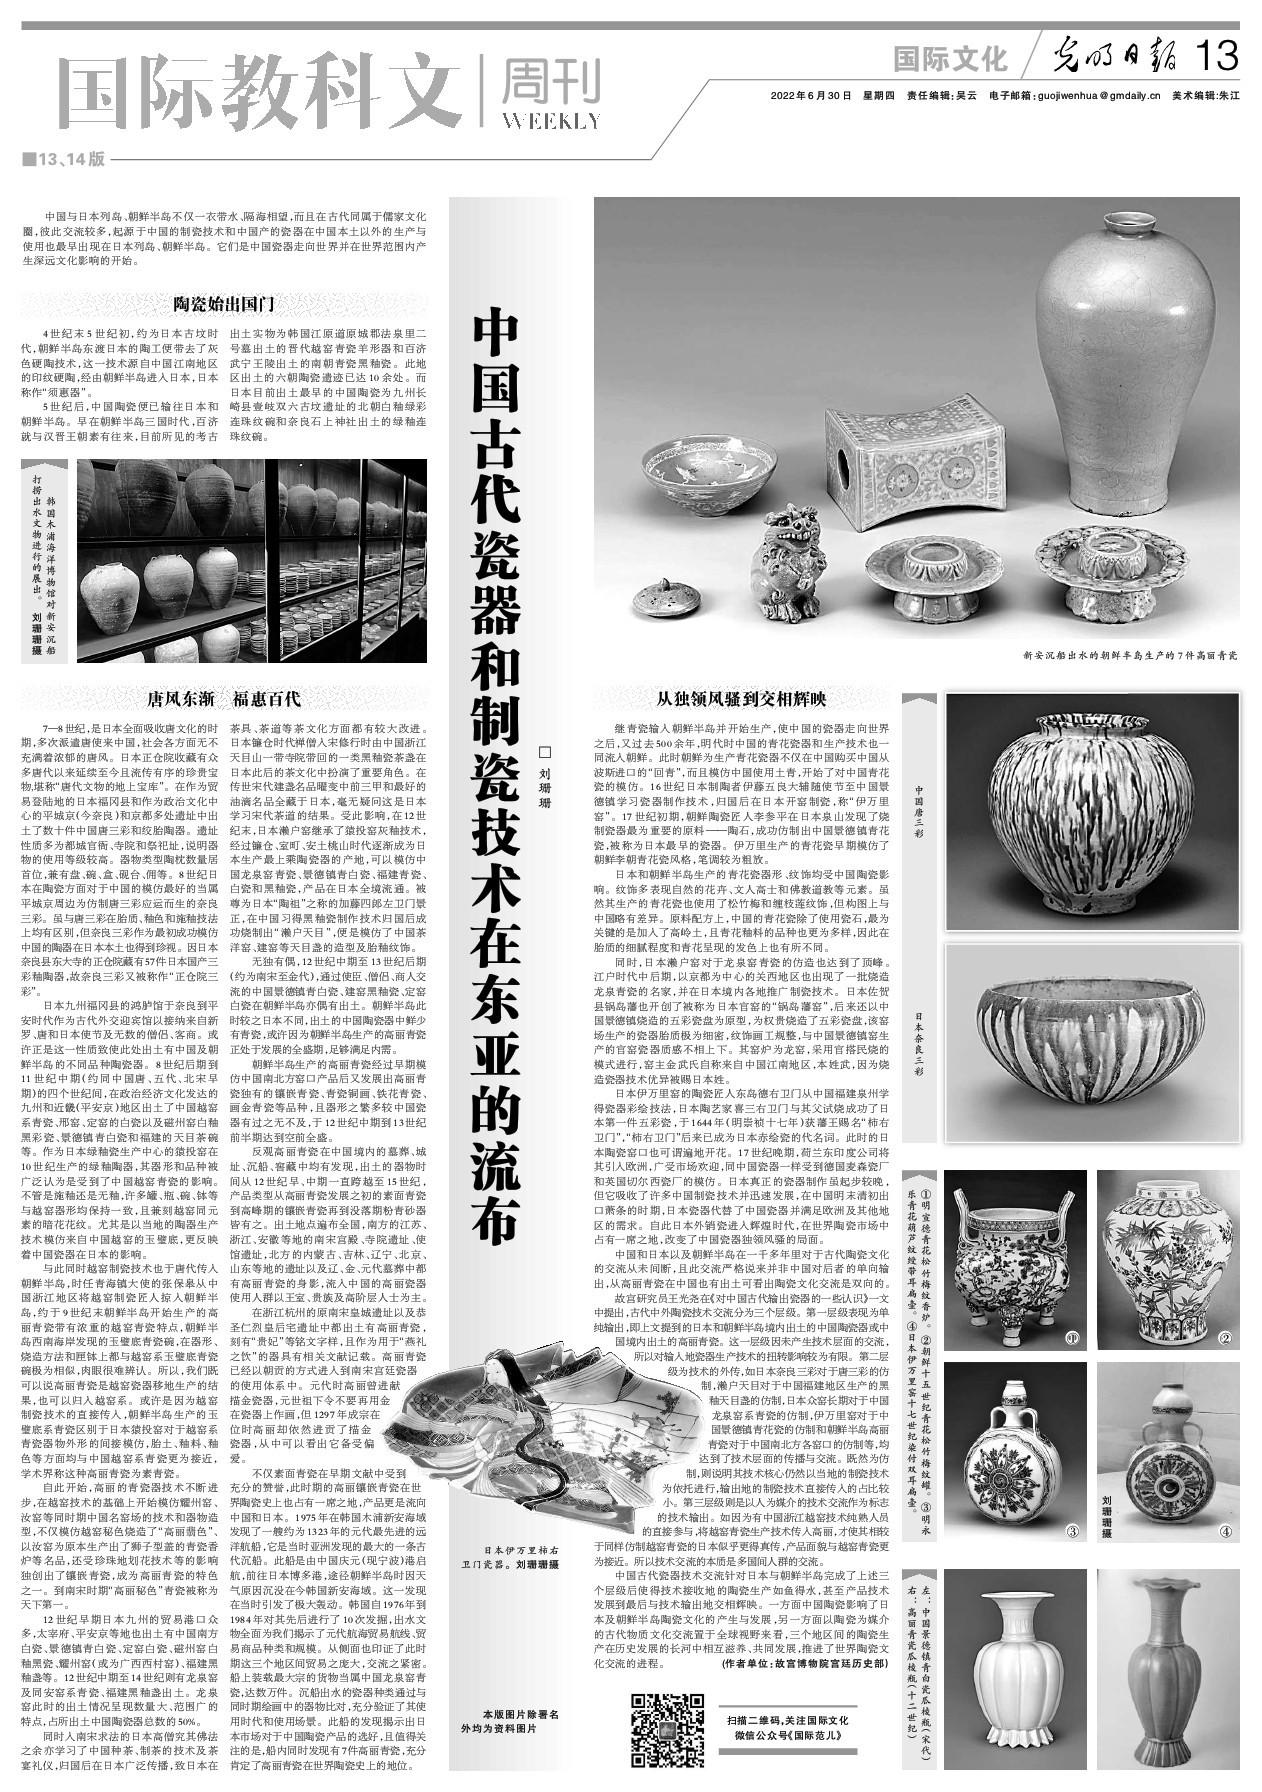 中国古代瓷器和制瓷技术在东亚的流布-光明日报-光明网